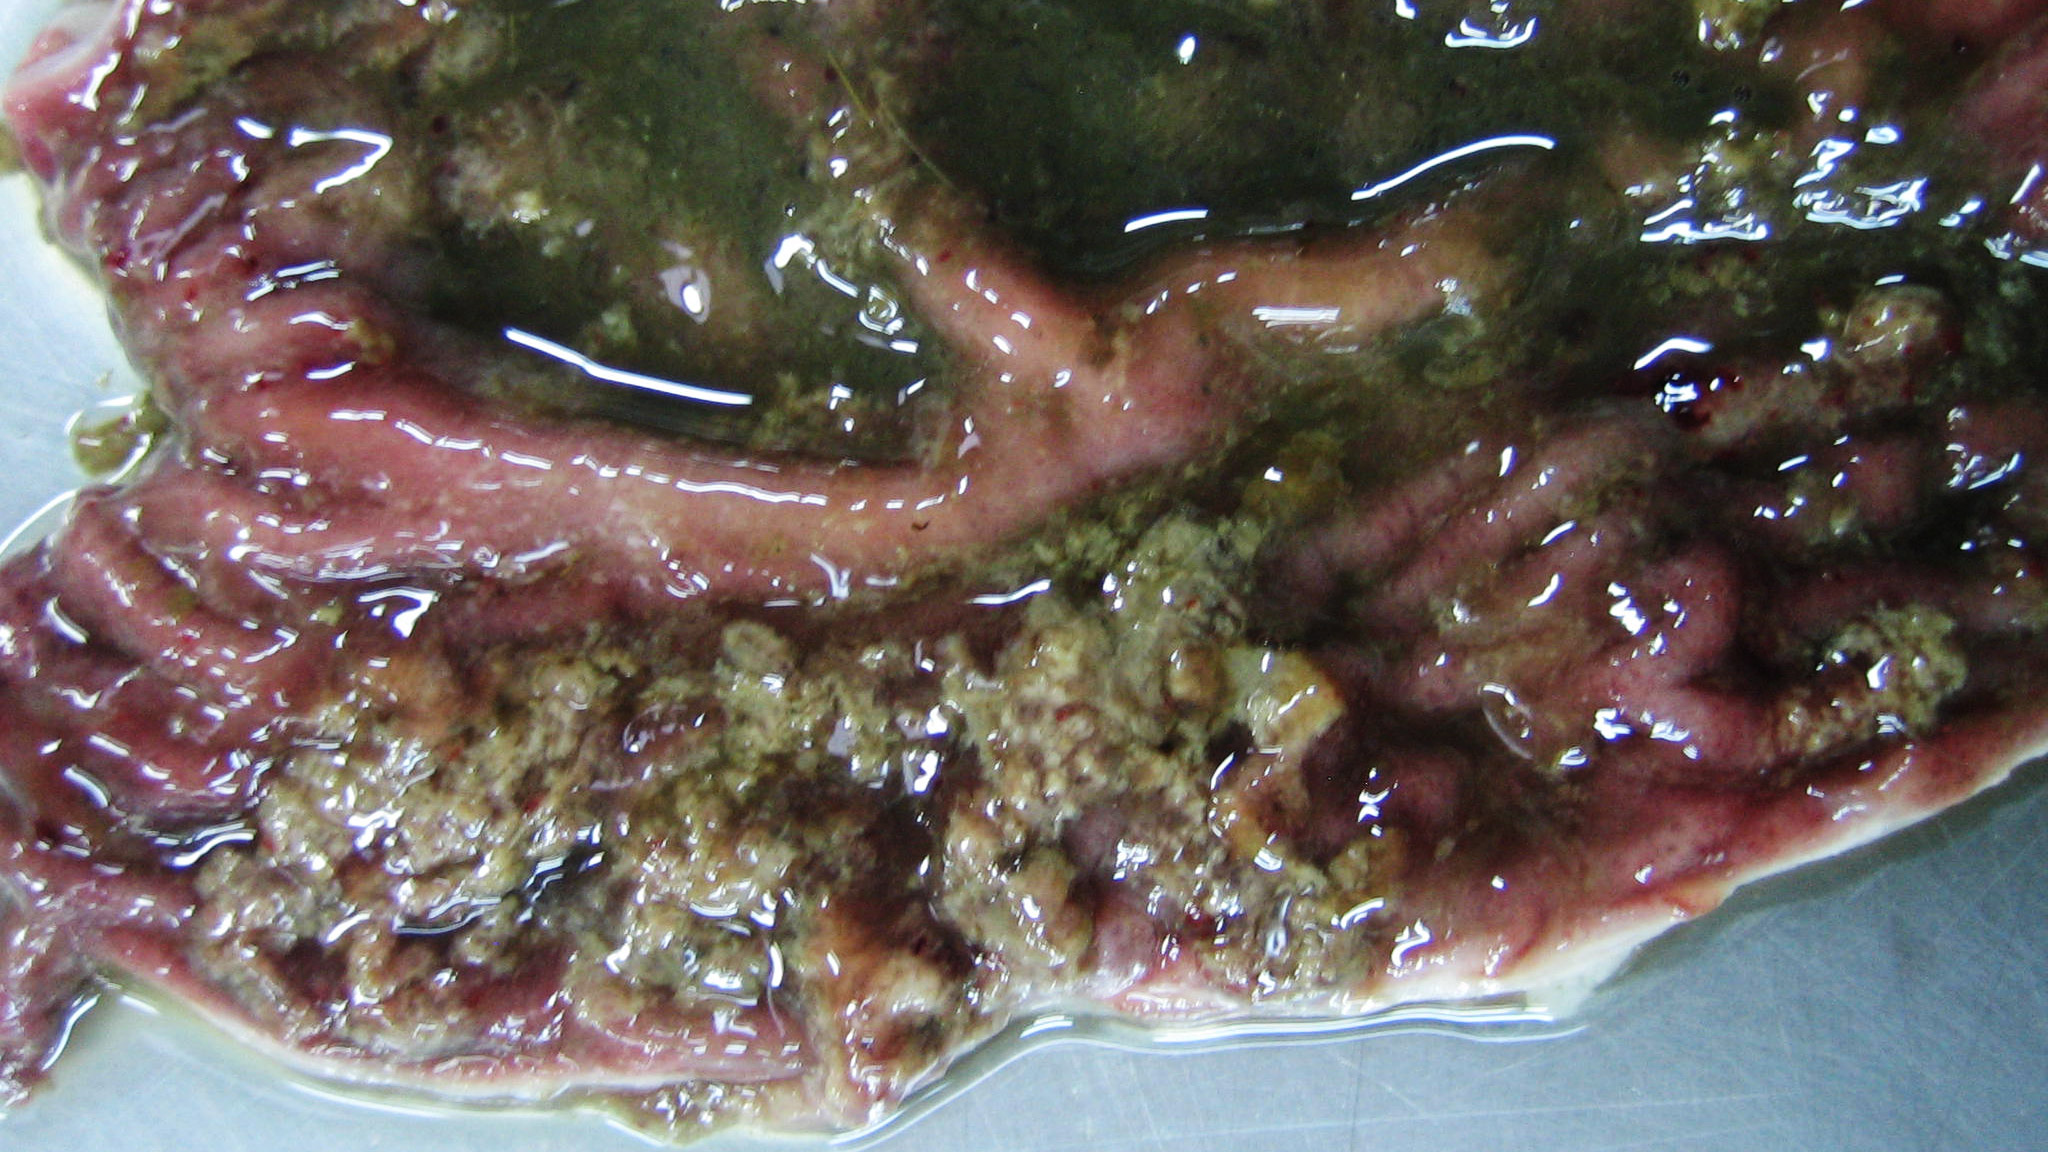 <p>Colon de un lech&oacute;n de 10 semanas de vida con disenter&iacute;a porcina. Necrosis superficial de la mucosa asociada a hemorragia discreta y contenido catarral.</p>
